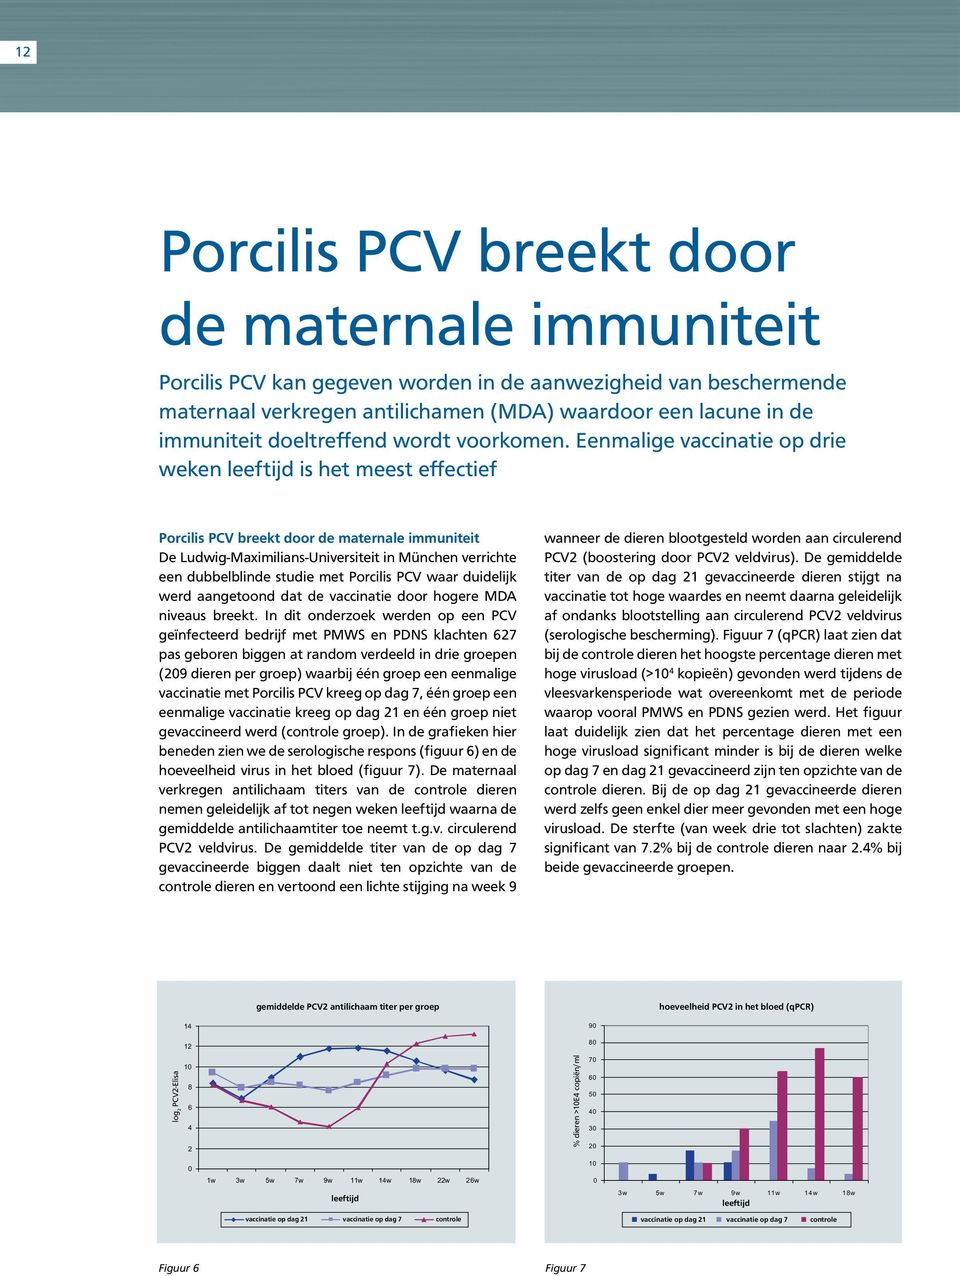 Eenmalige vaccinatie op drie weken leeftijd is het meest effectief Porcilis PCV breekt door de maternale immuniteit De Ludwig-Maximilians-Universiteit in München verrichte een dubbelblinde studie met